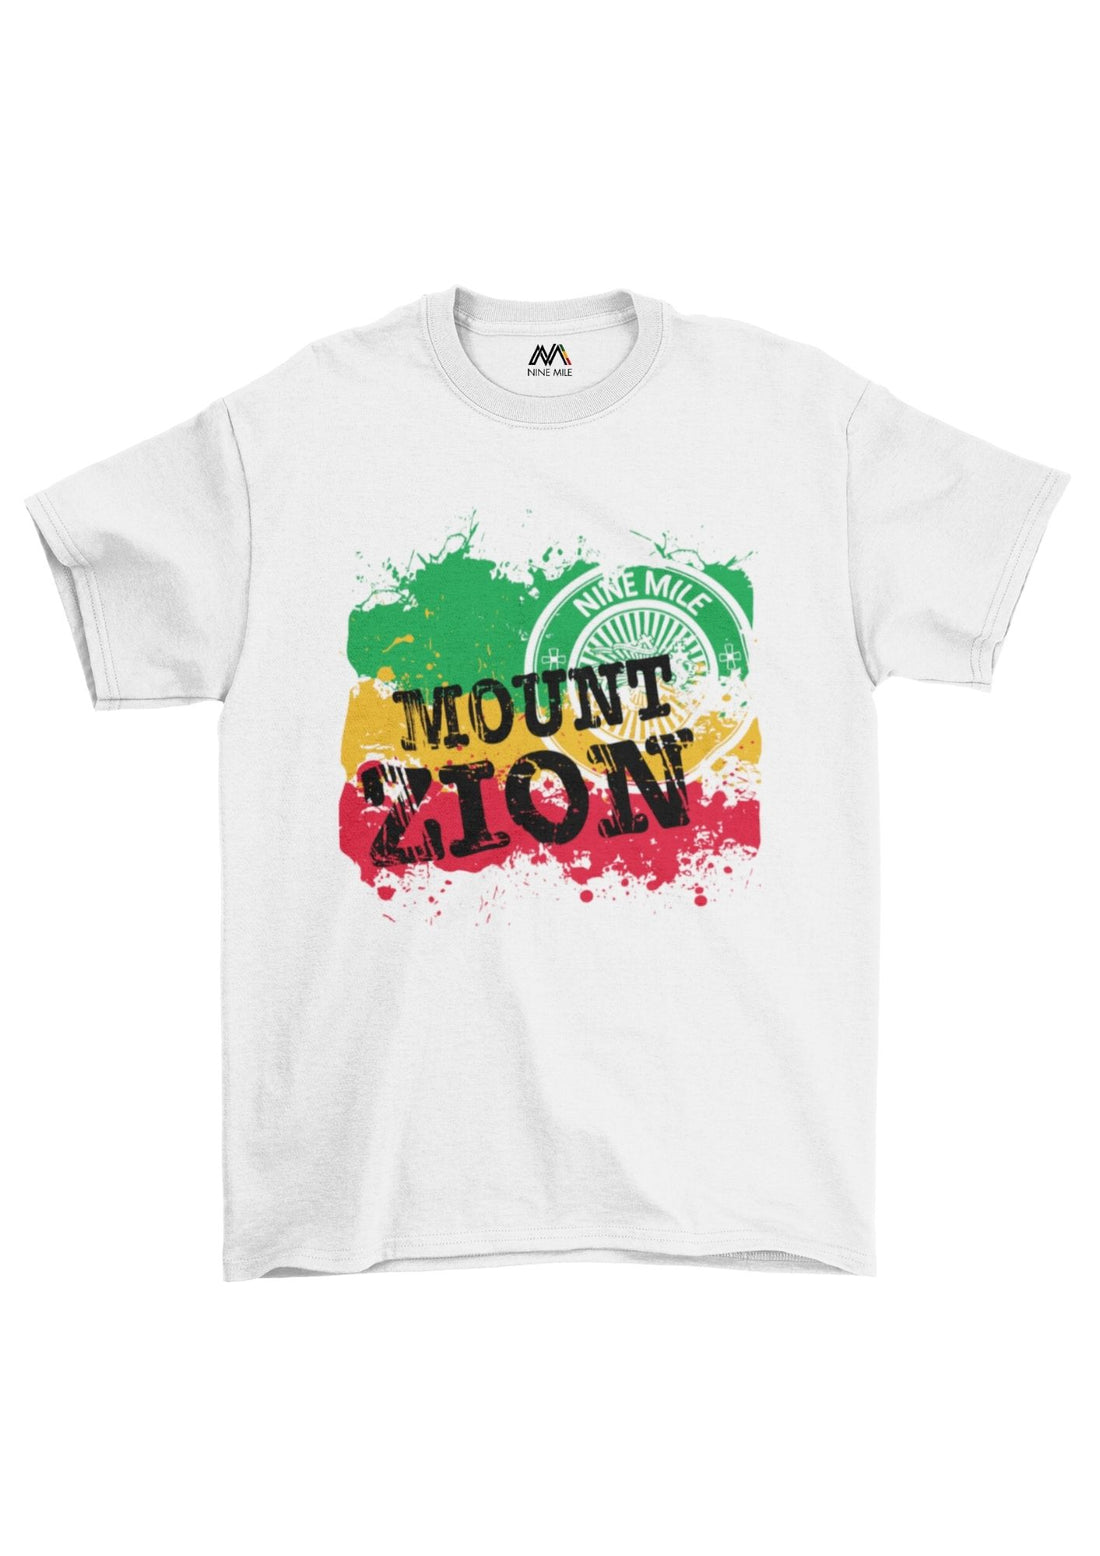 Nine Mile 'Mount Zion' T-Shirt - Nine Mile Clothing 